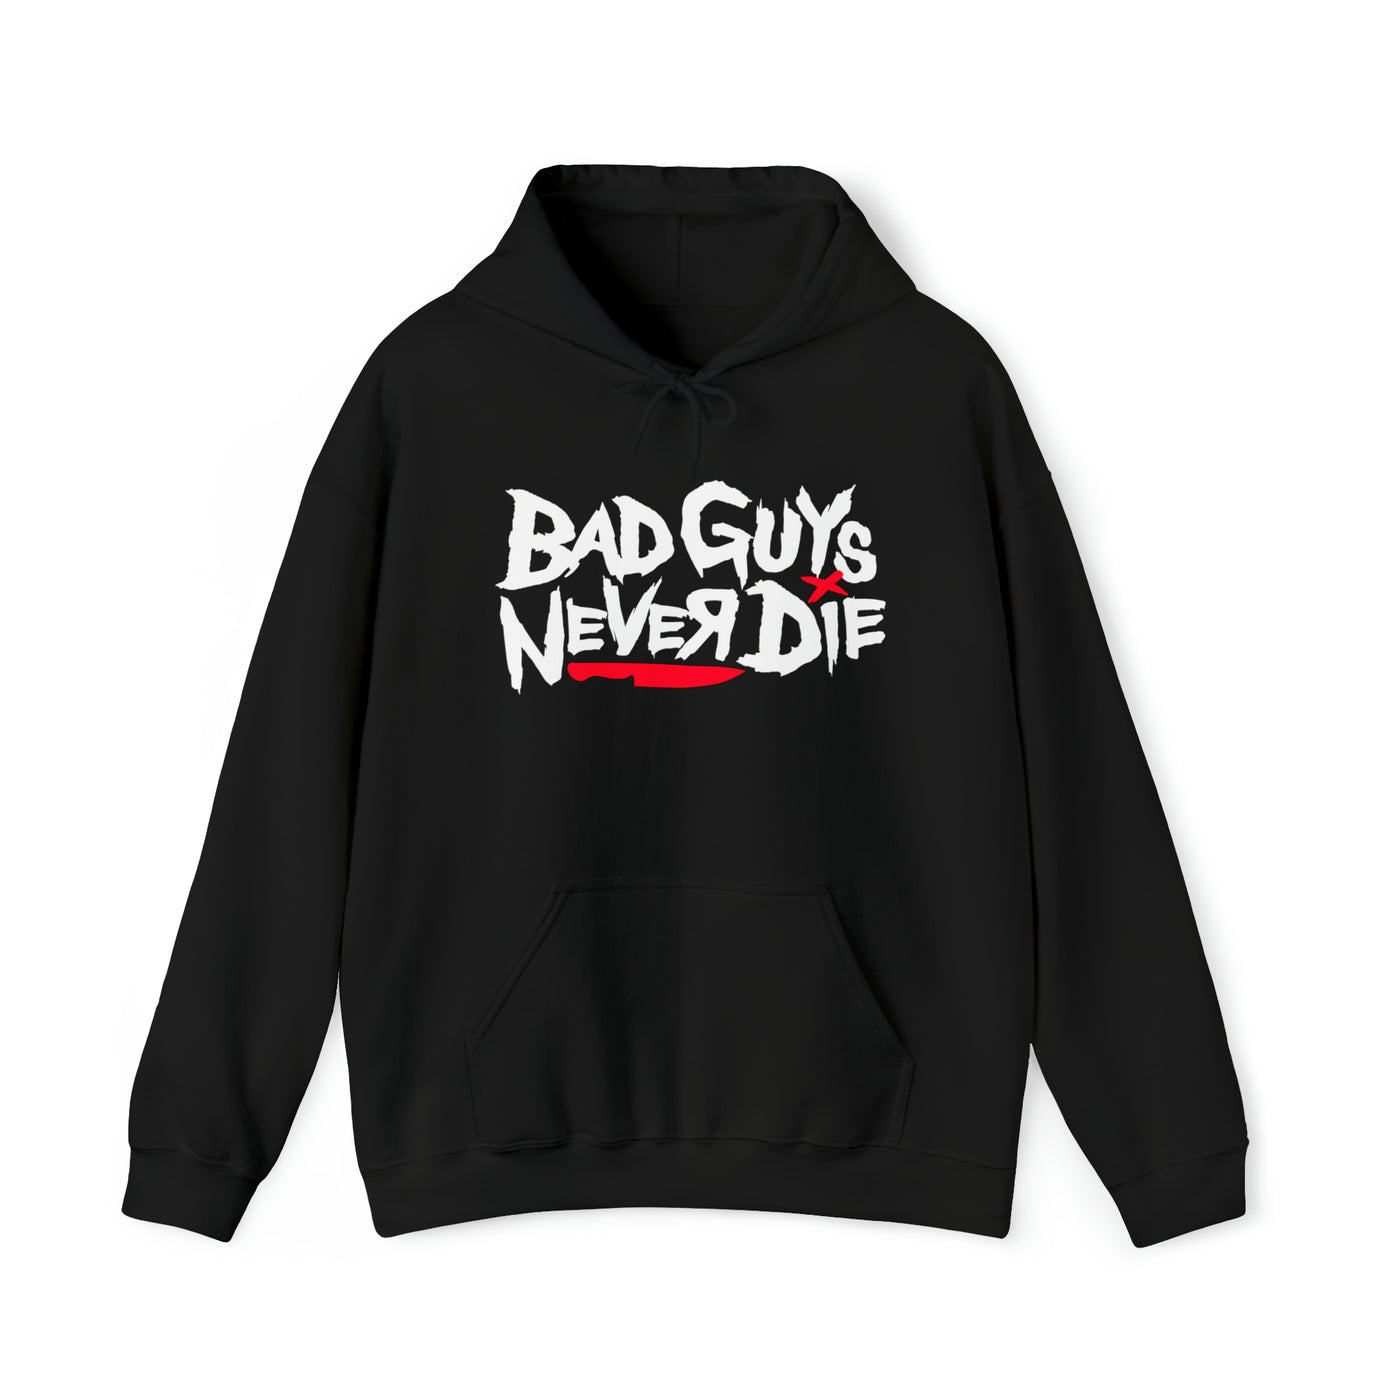 Bad Guys Never Die Pullover Hoodie - Men's